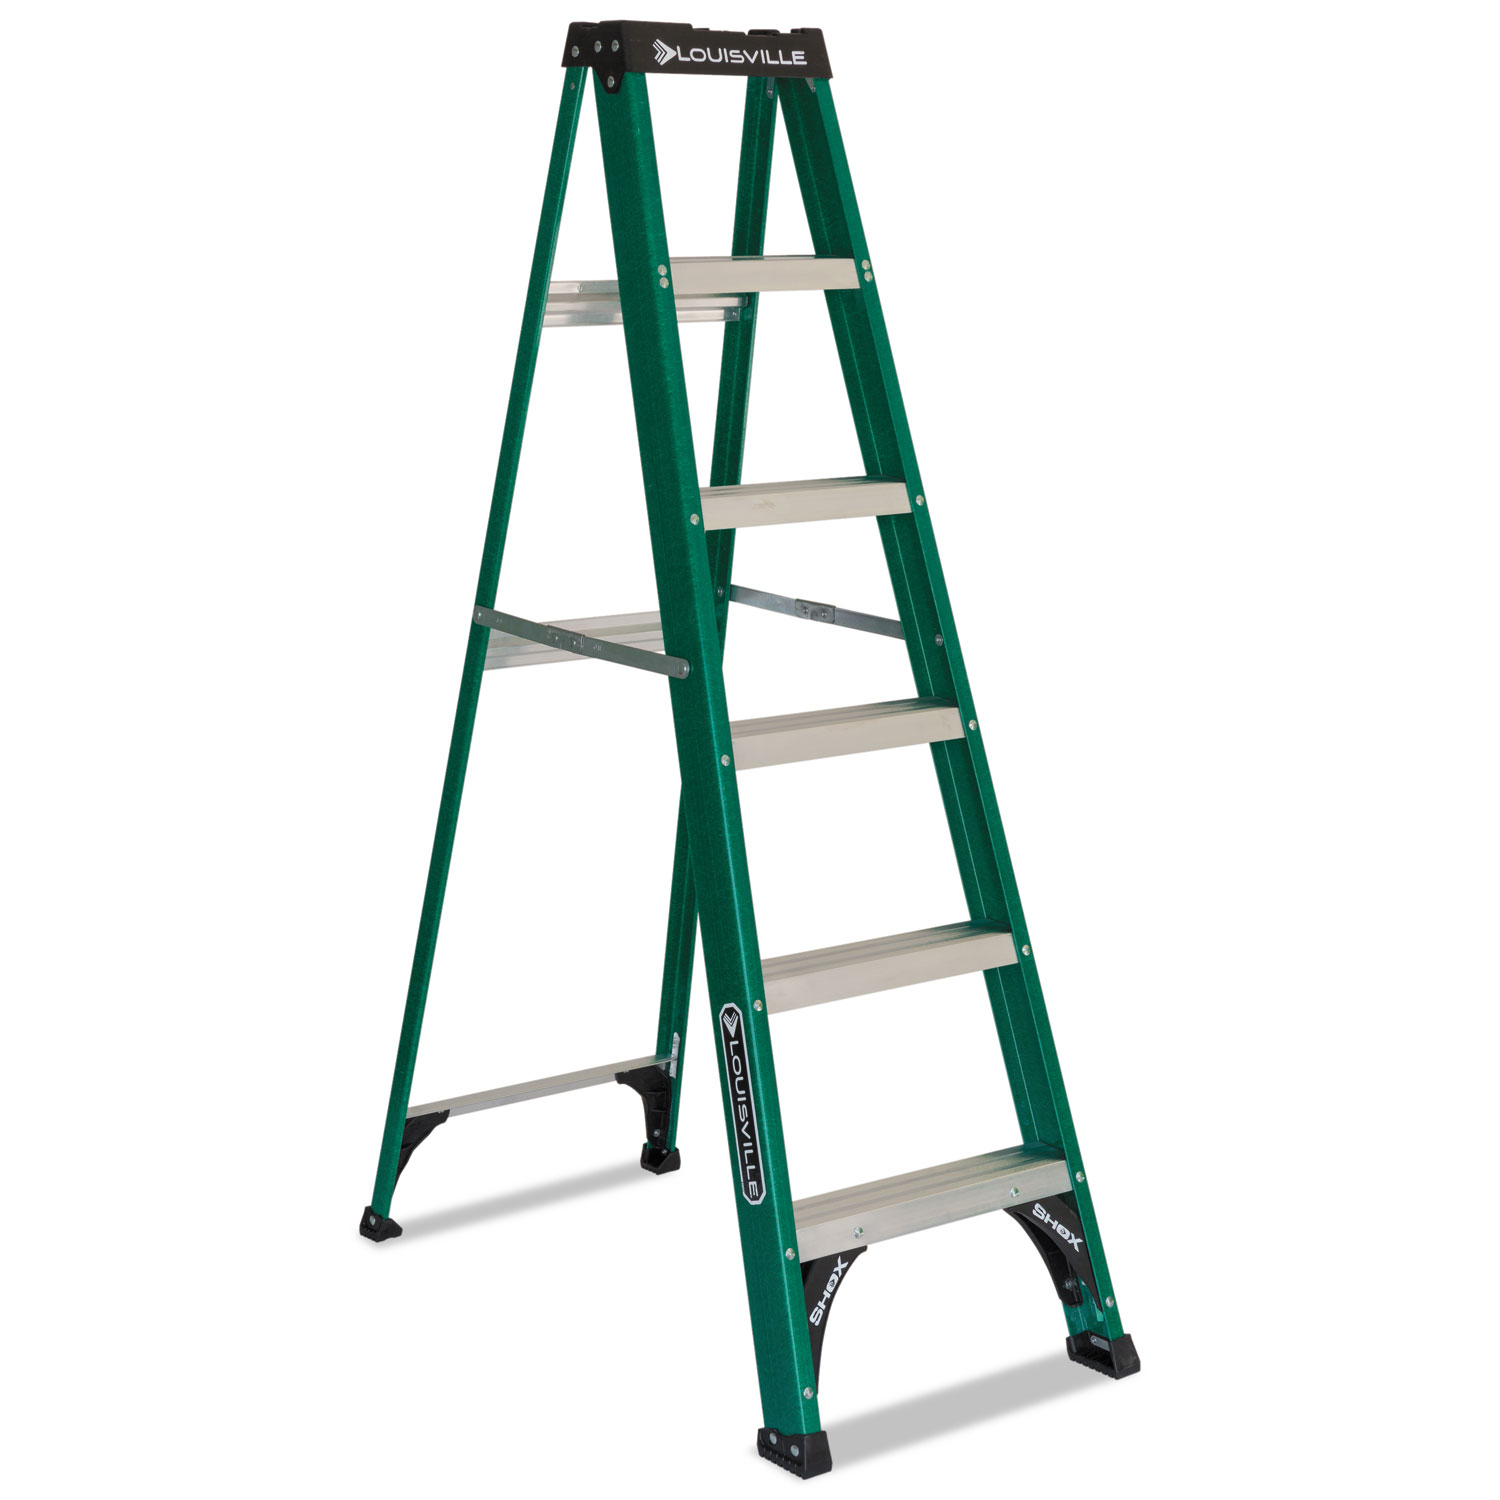  Louisville FS4006 Fiberglass Step Ladder, 8 ft Working Height, 225 lbs Capacity, 5 Step, Green/Black (DADFS4006) 